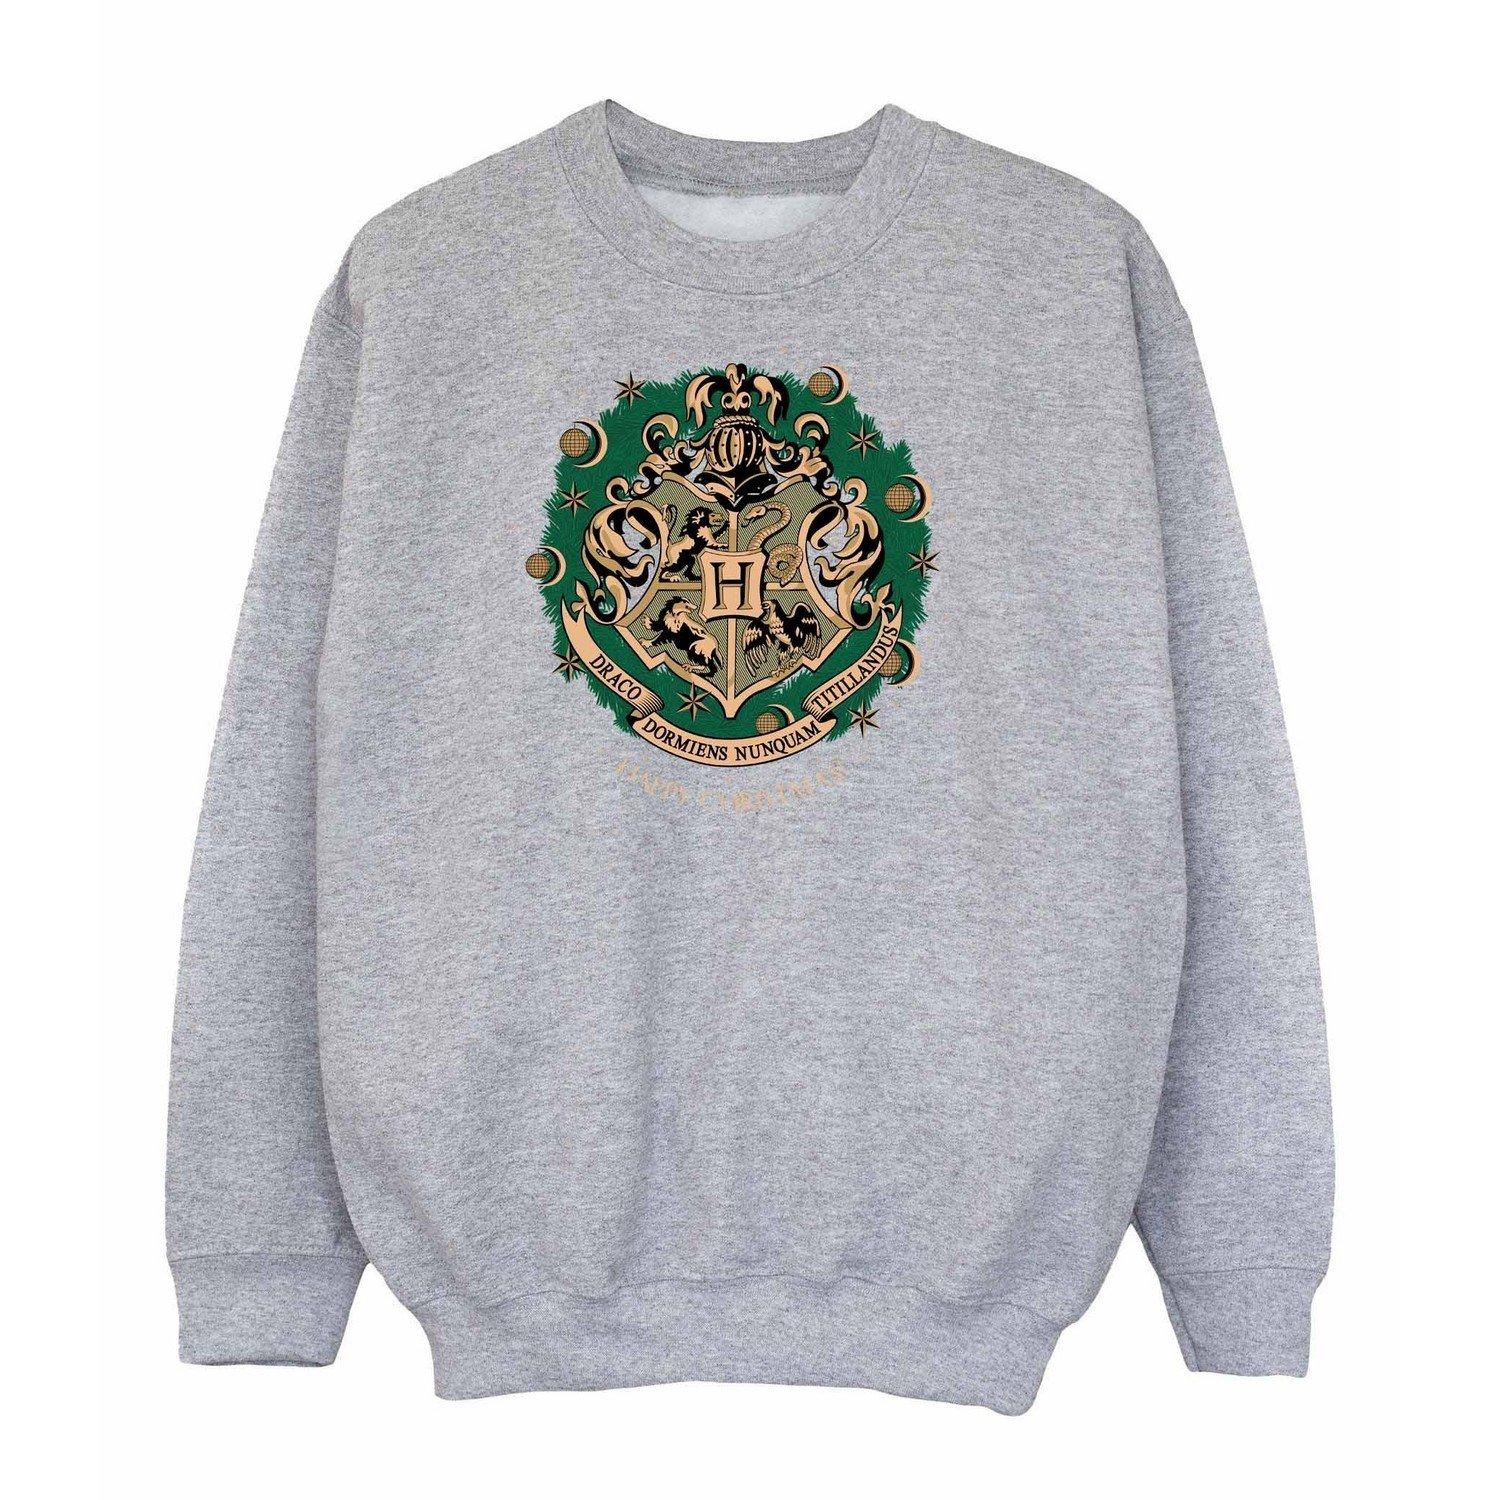 Sweatshirt Weihnachtliches Design Unisex Grau 152-158 von Harry Potter